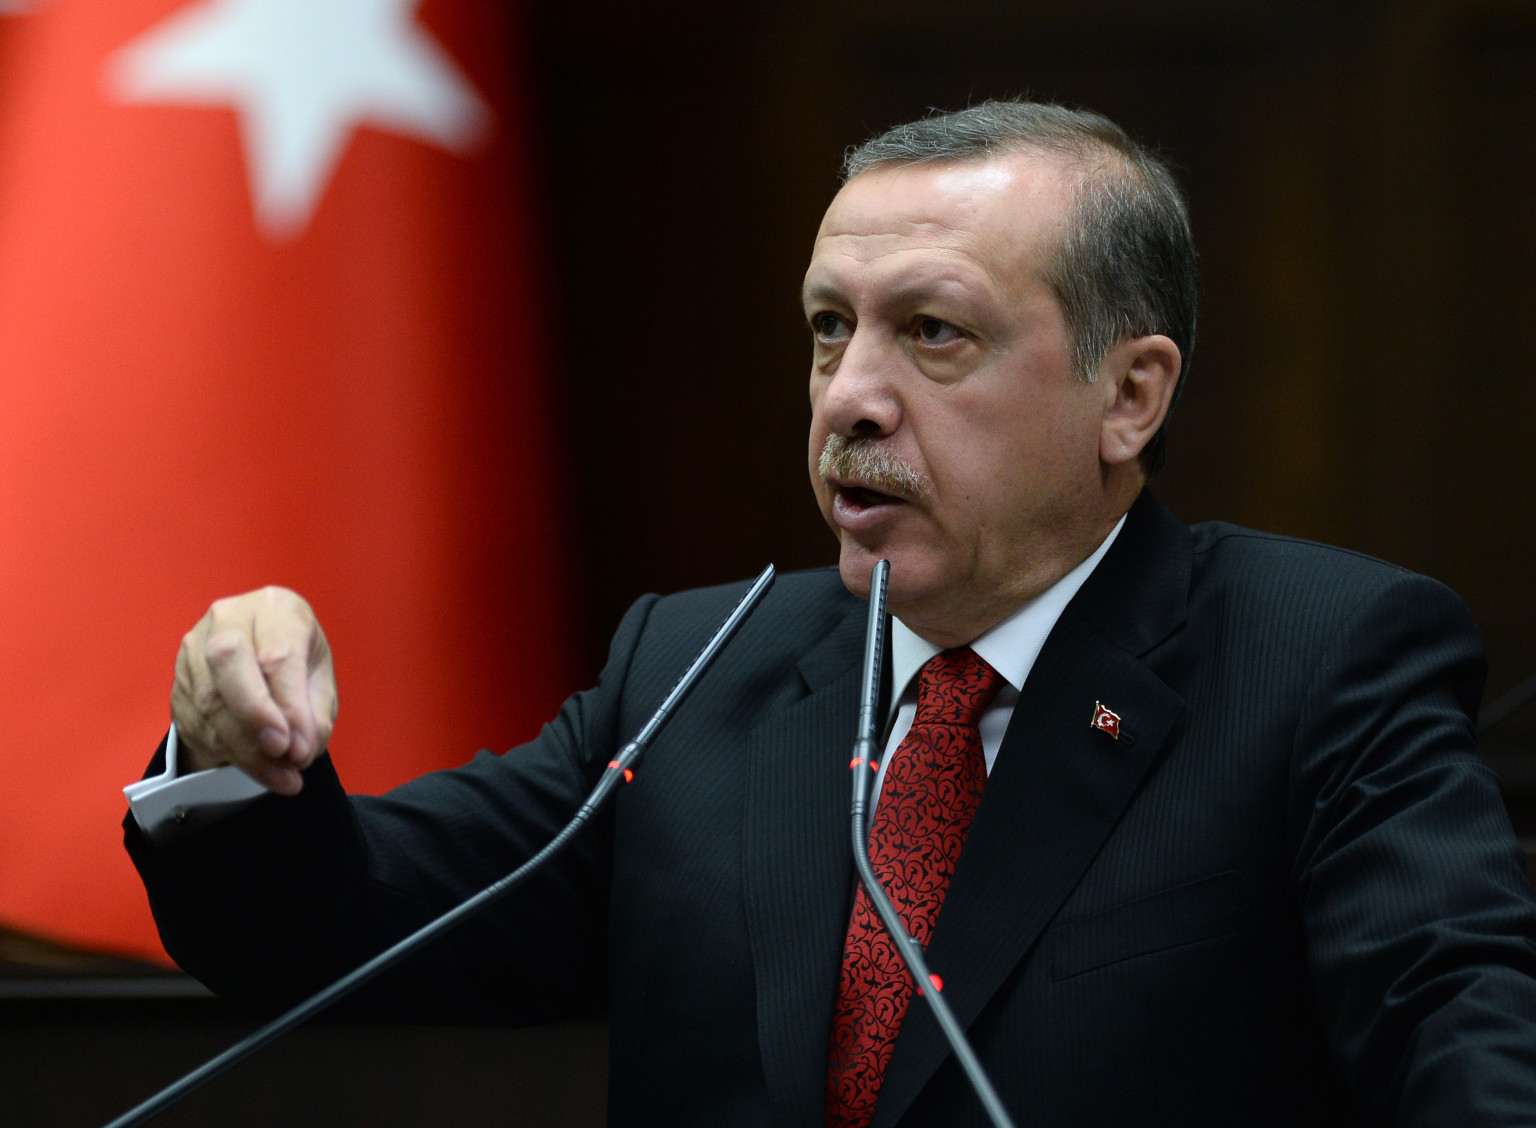 Президент Туреччини все активніше виступає проти інтернету